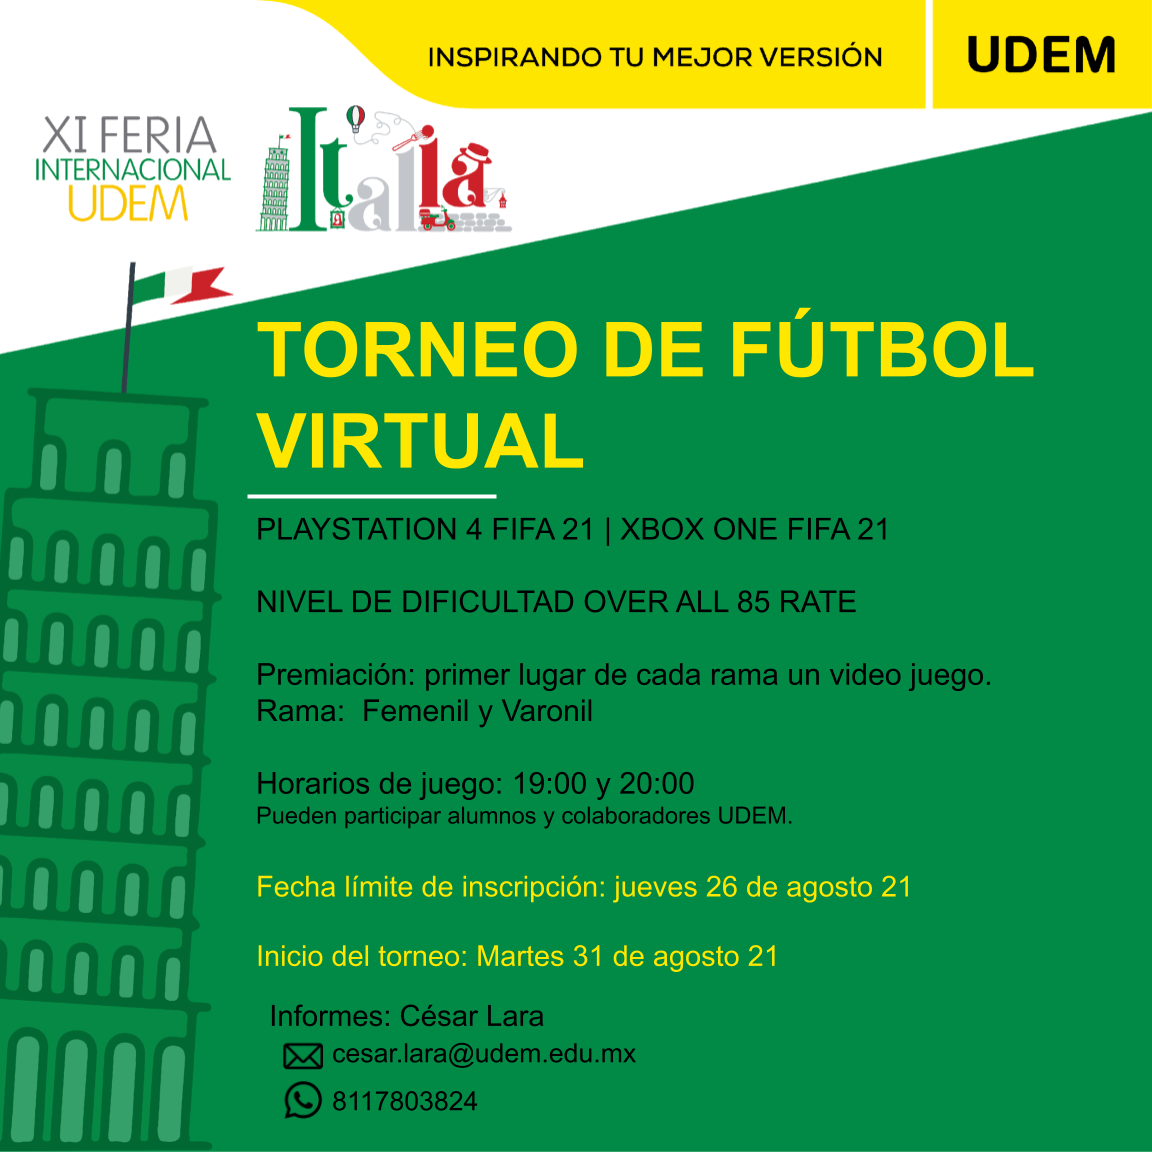 Ecard Torneo de Fútbol Virtual de la Feria Internacional UDEM: Italia